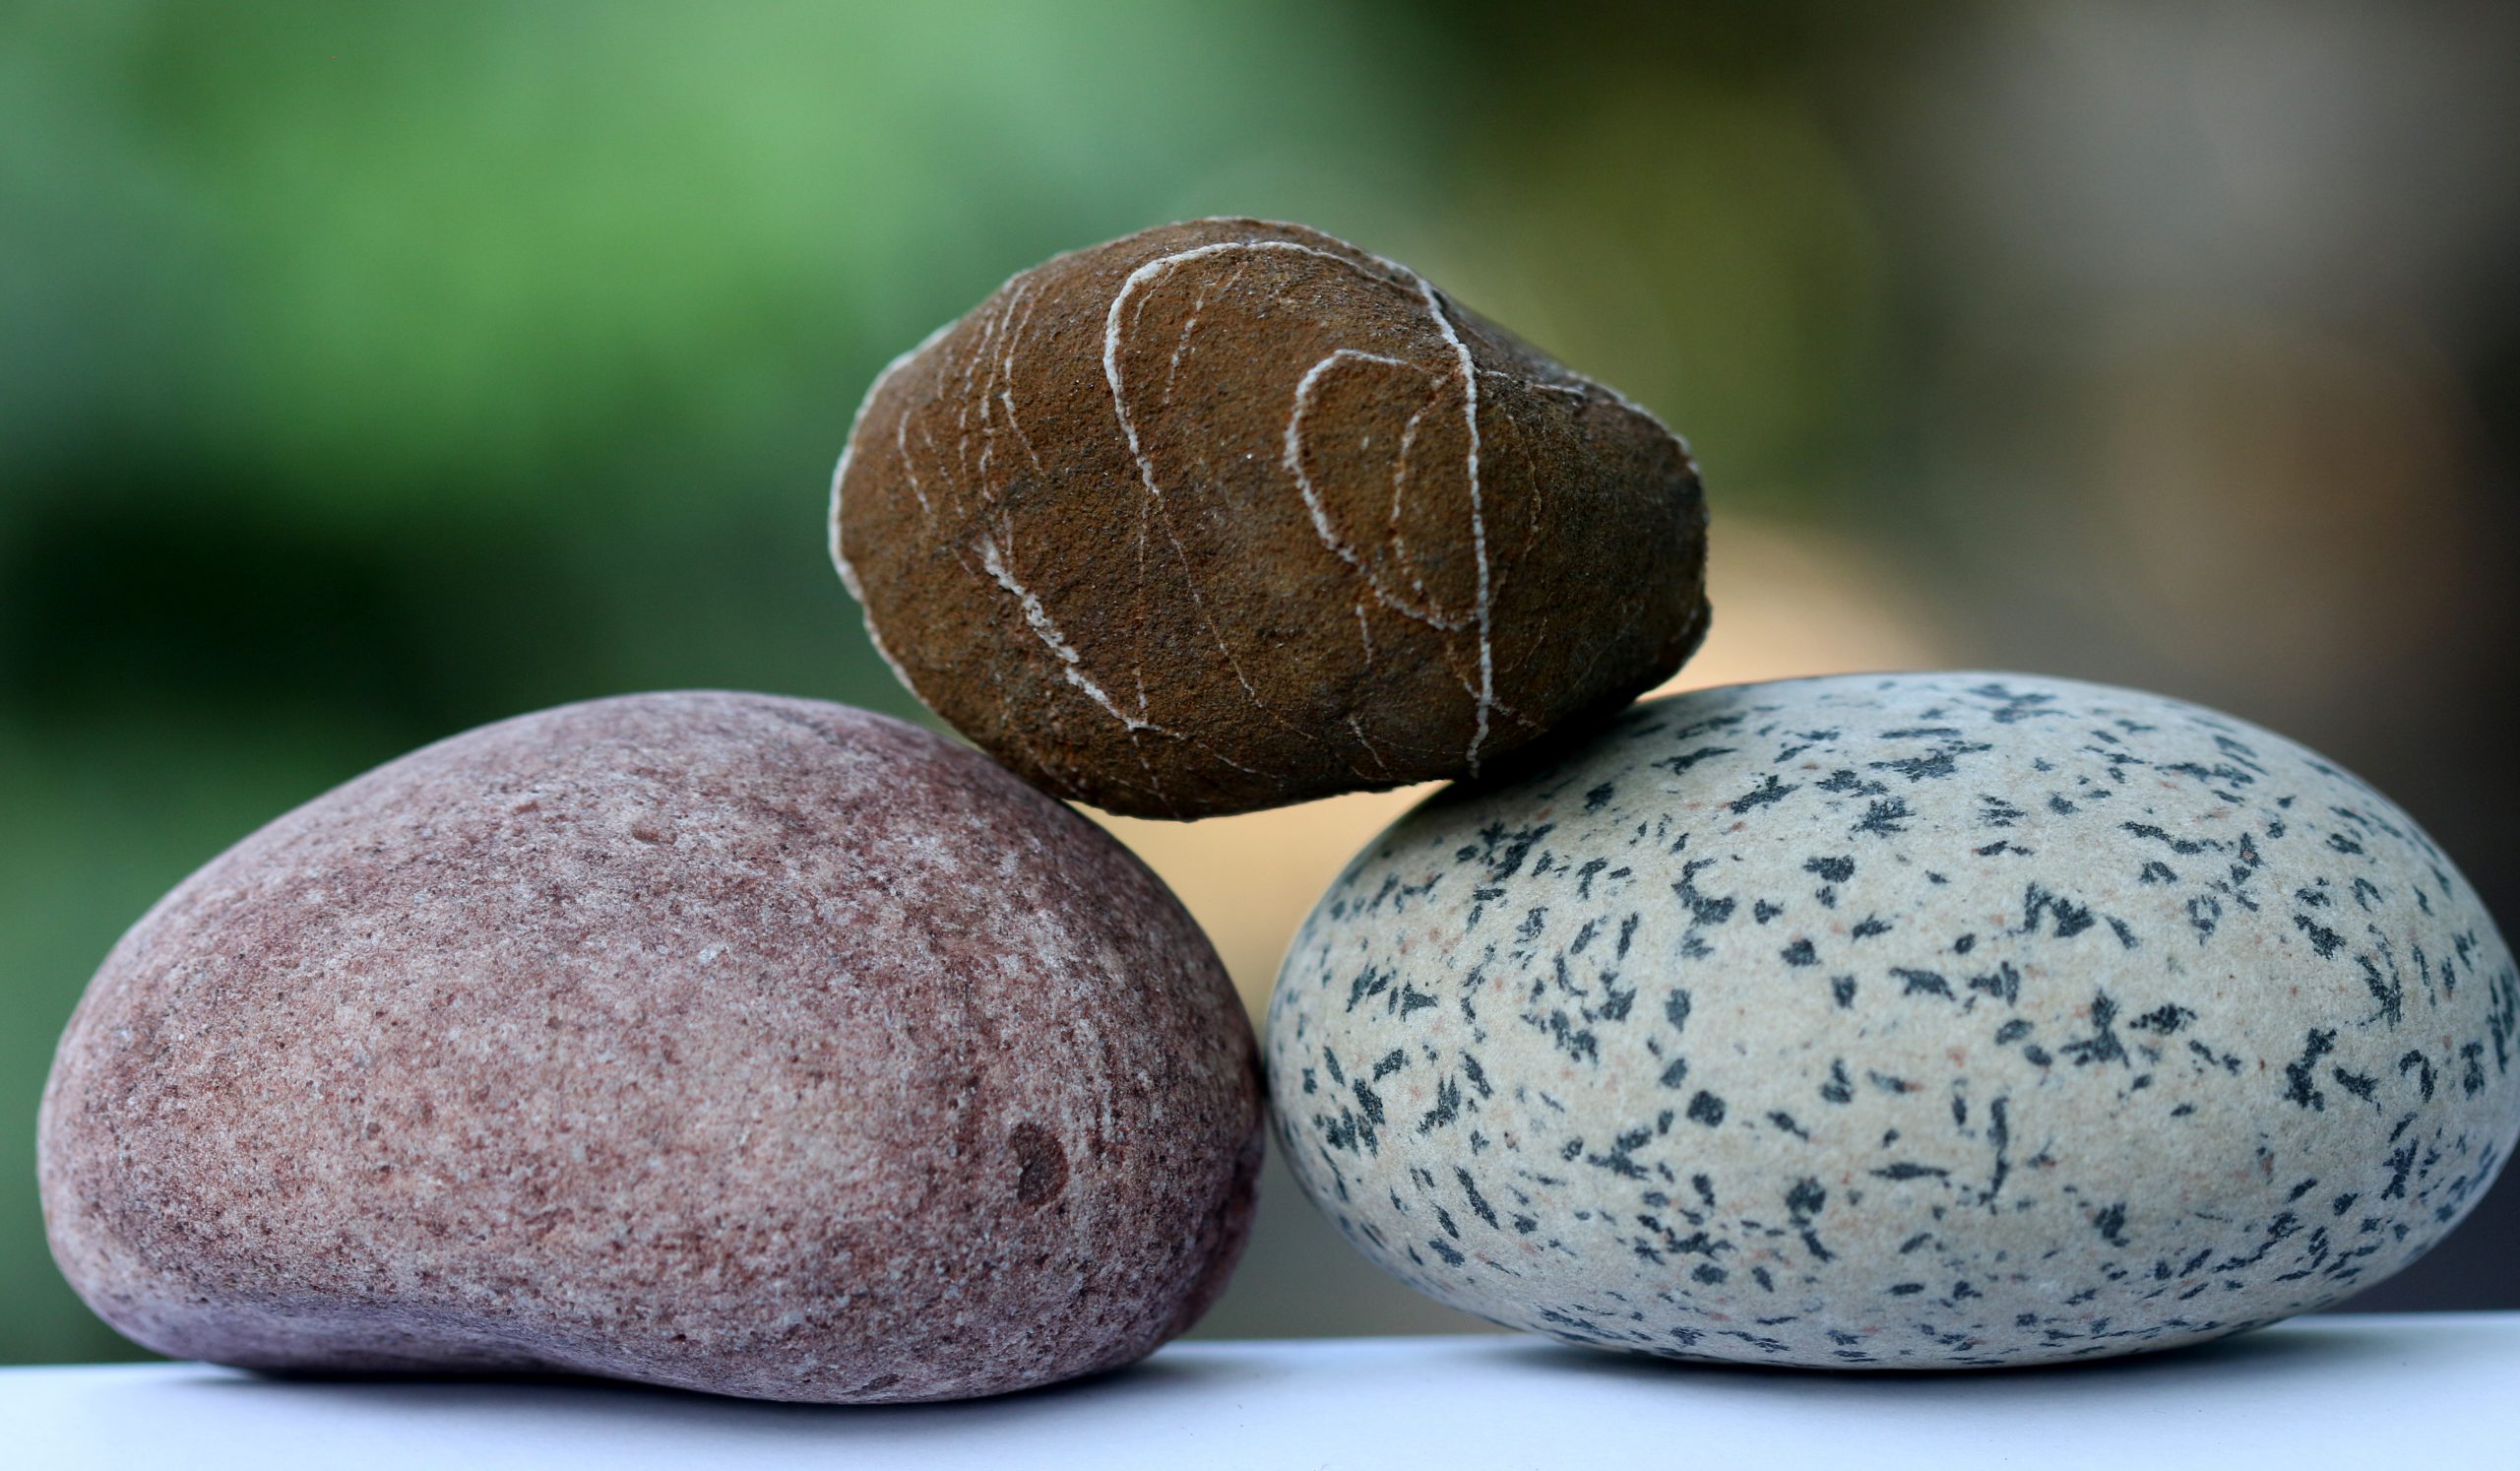 Stones